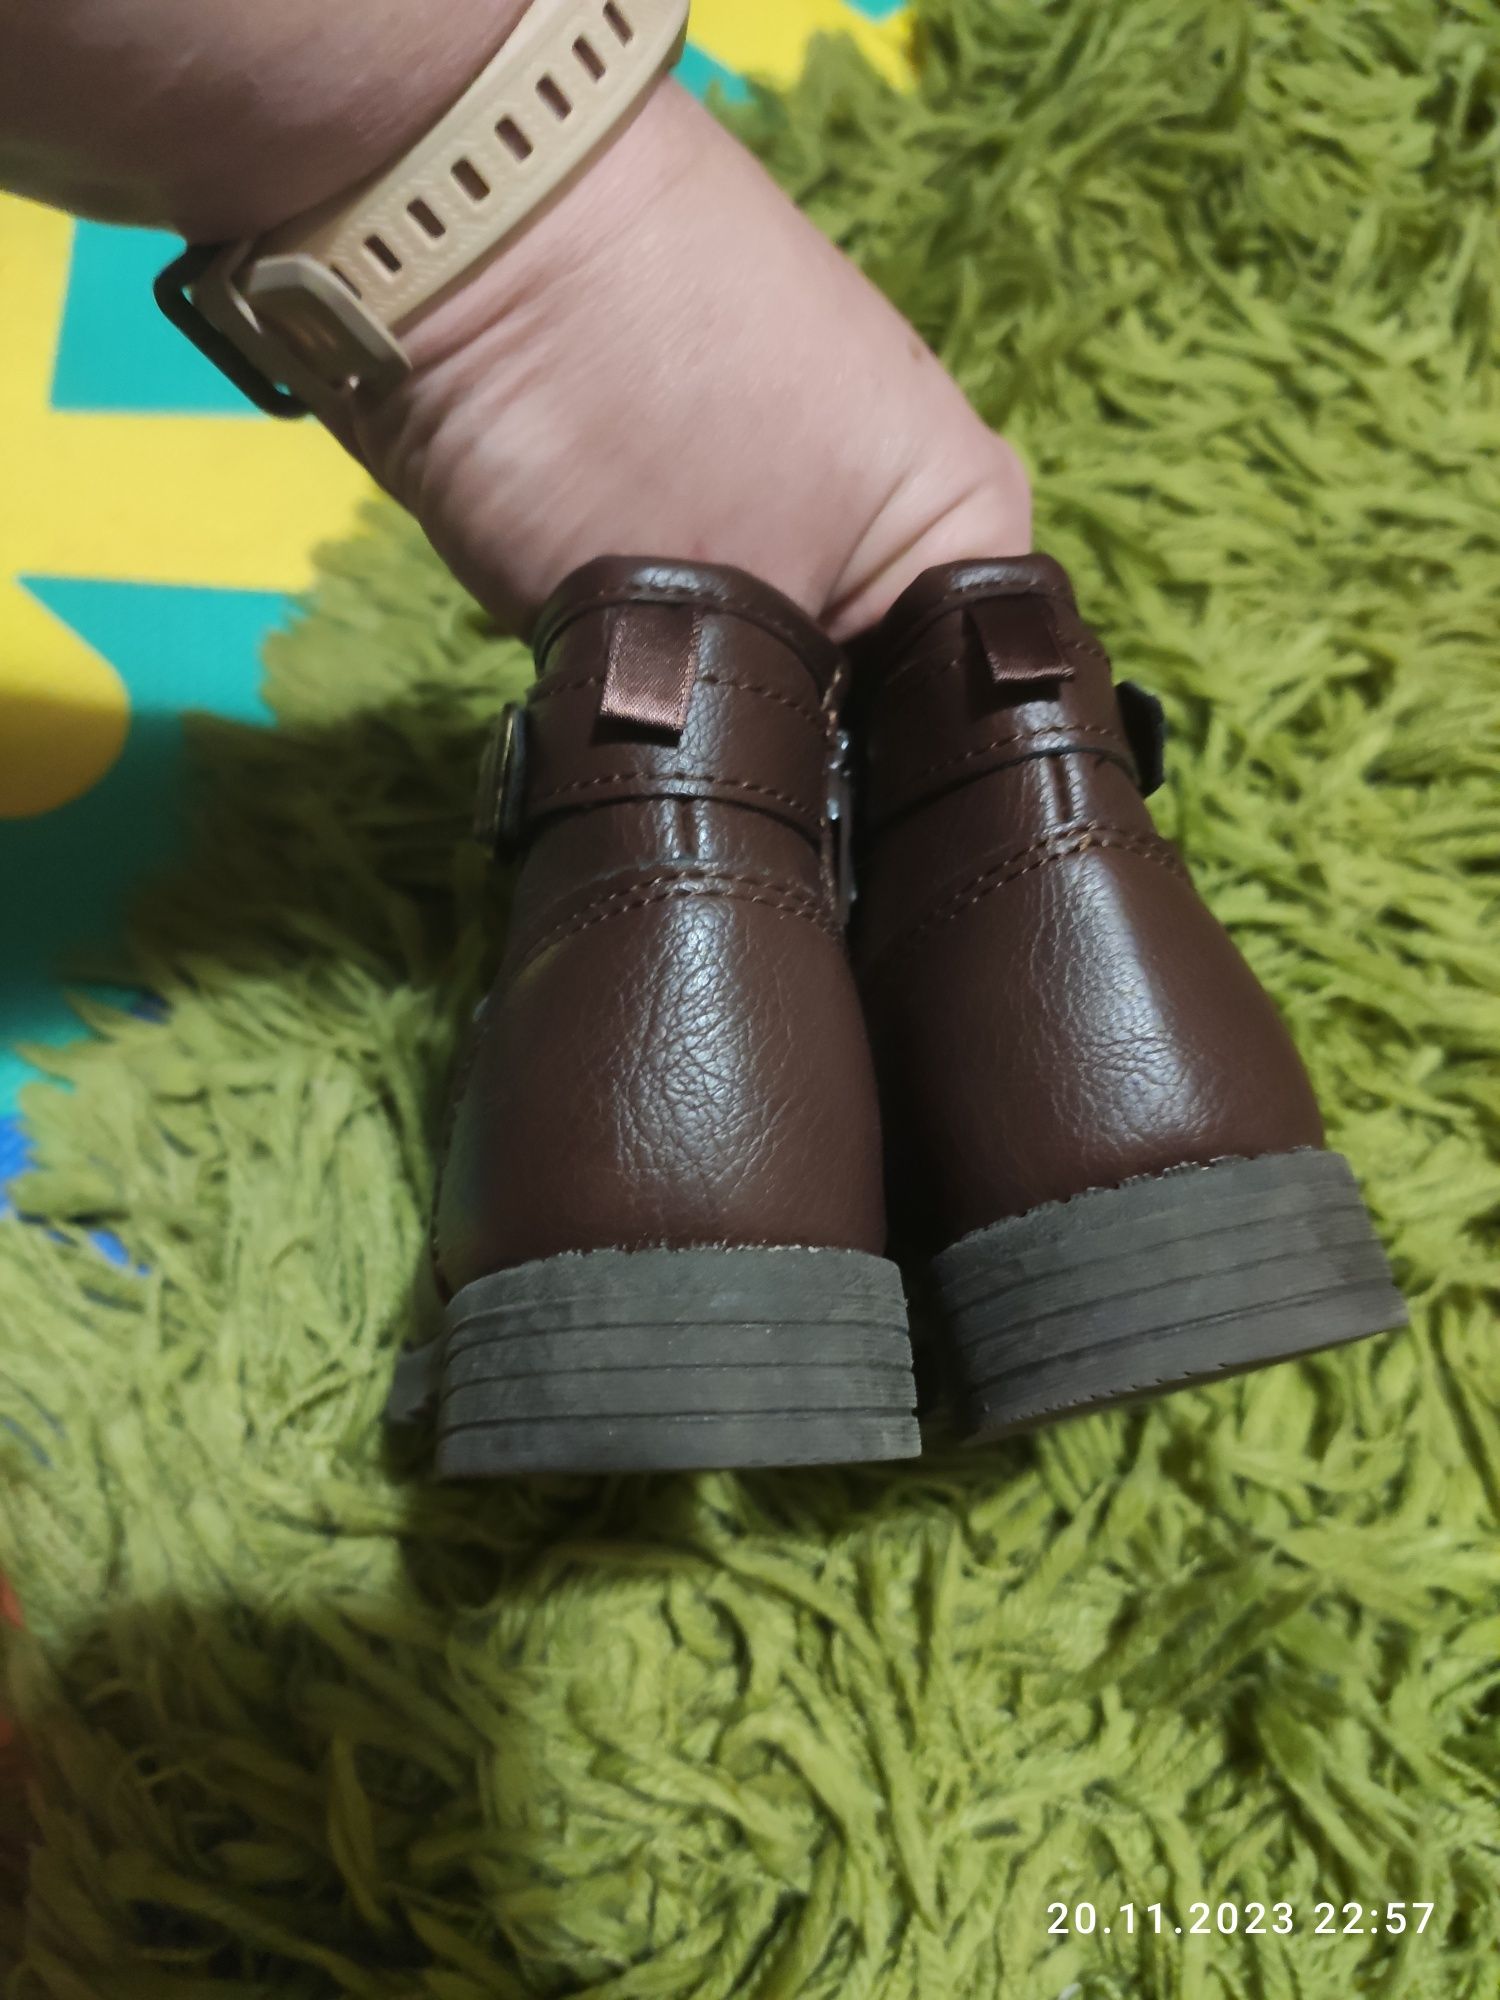 Дитячі чобітки демисезонні чи єврозима Carter's р-24, 14,6 см